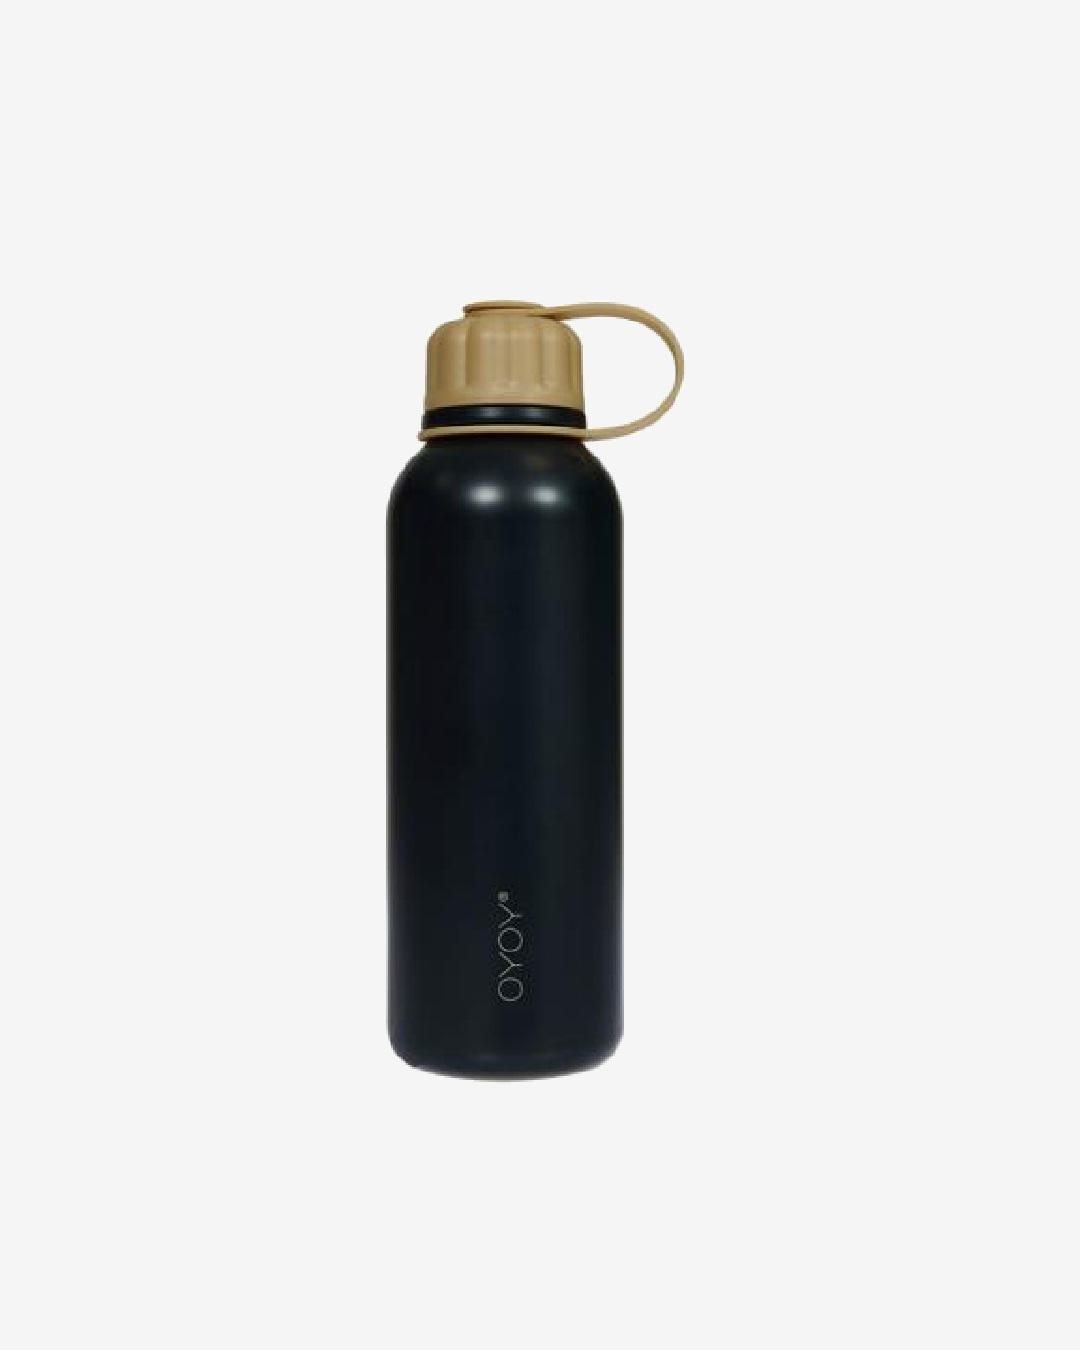 Black and Gold drink bottle